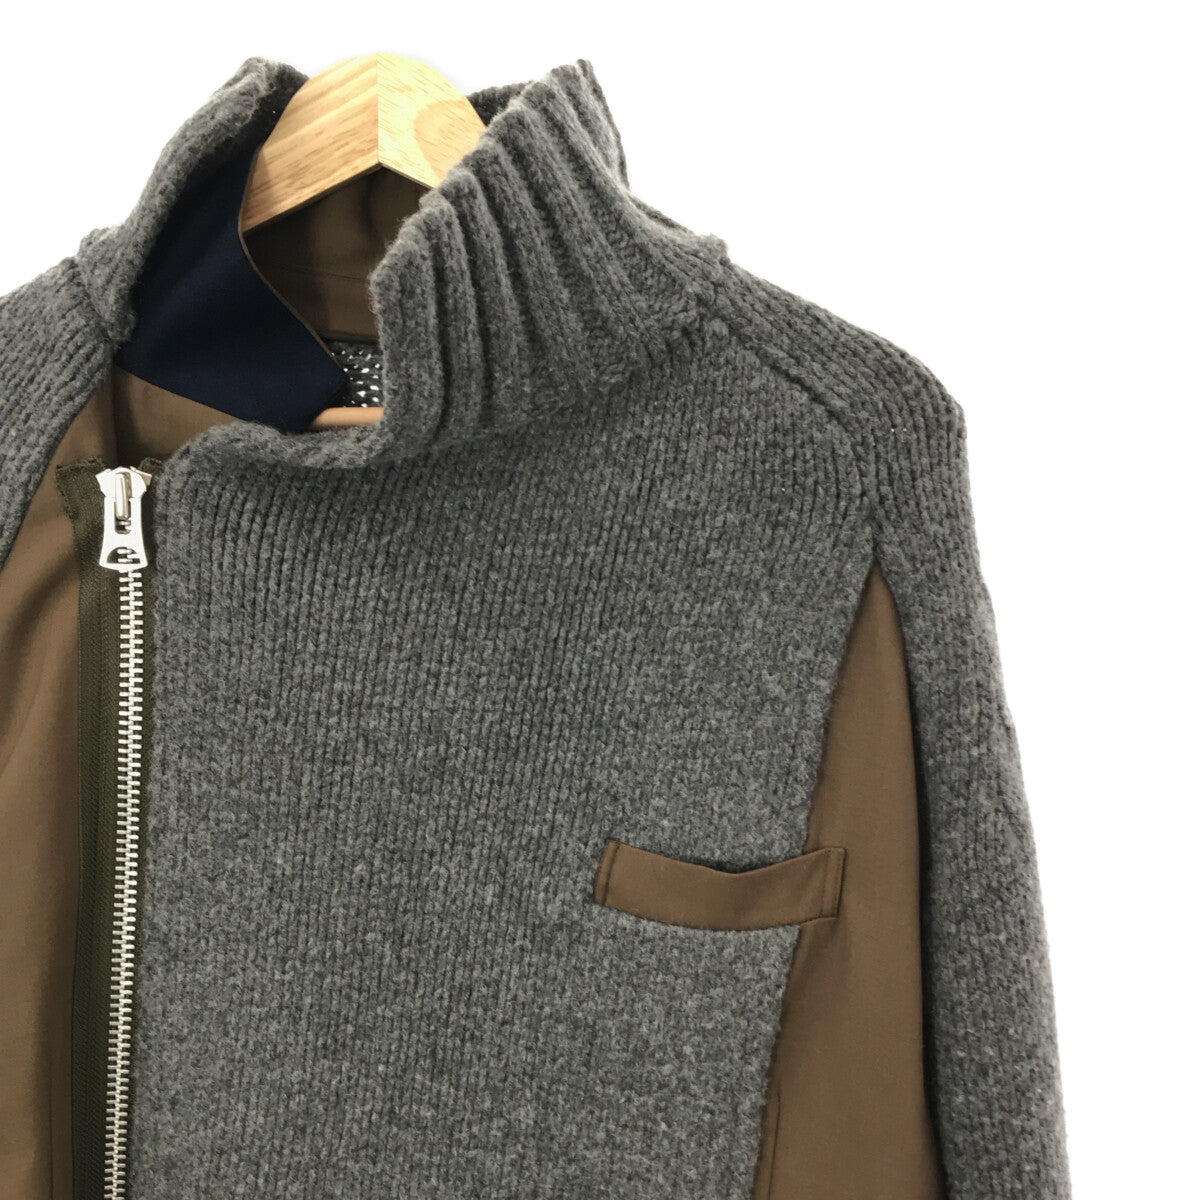 sacai / サカイ | 2022AW | Suiting x Wool Knit Jacket / 再構築 ドッキング ウールニット ブレザー  ジャケット | 2 |